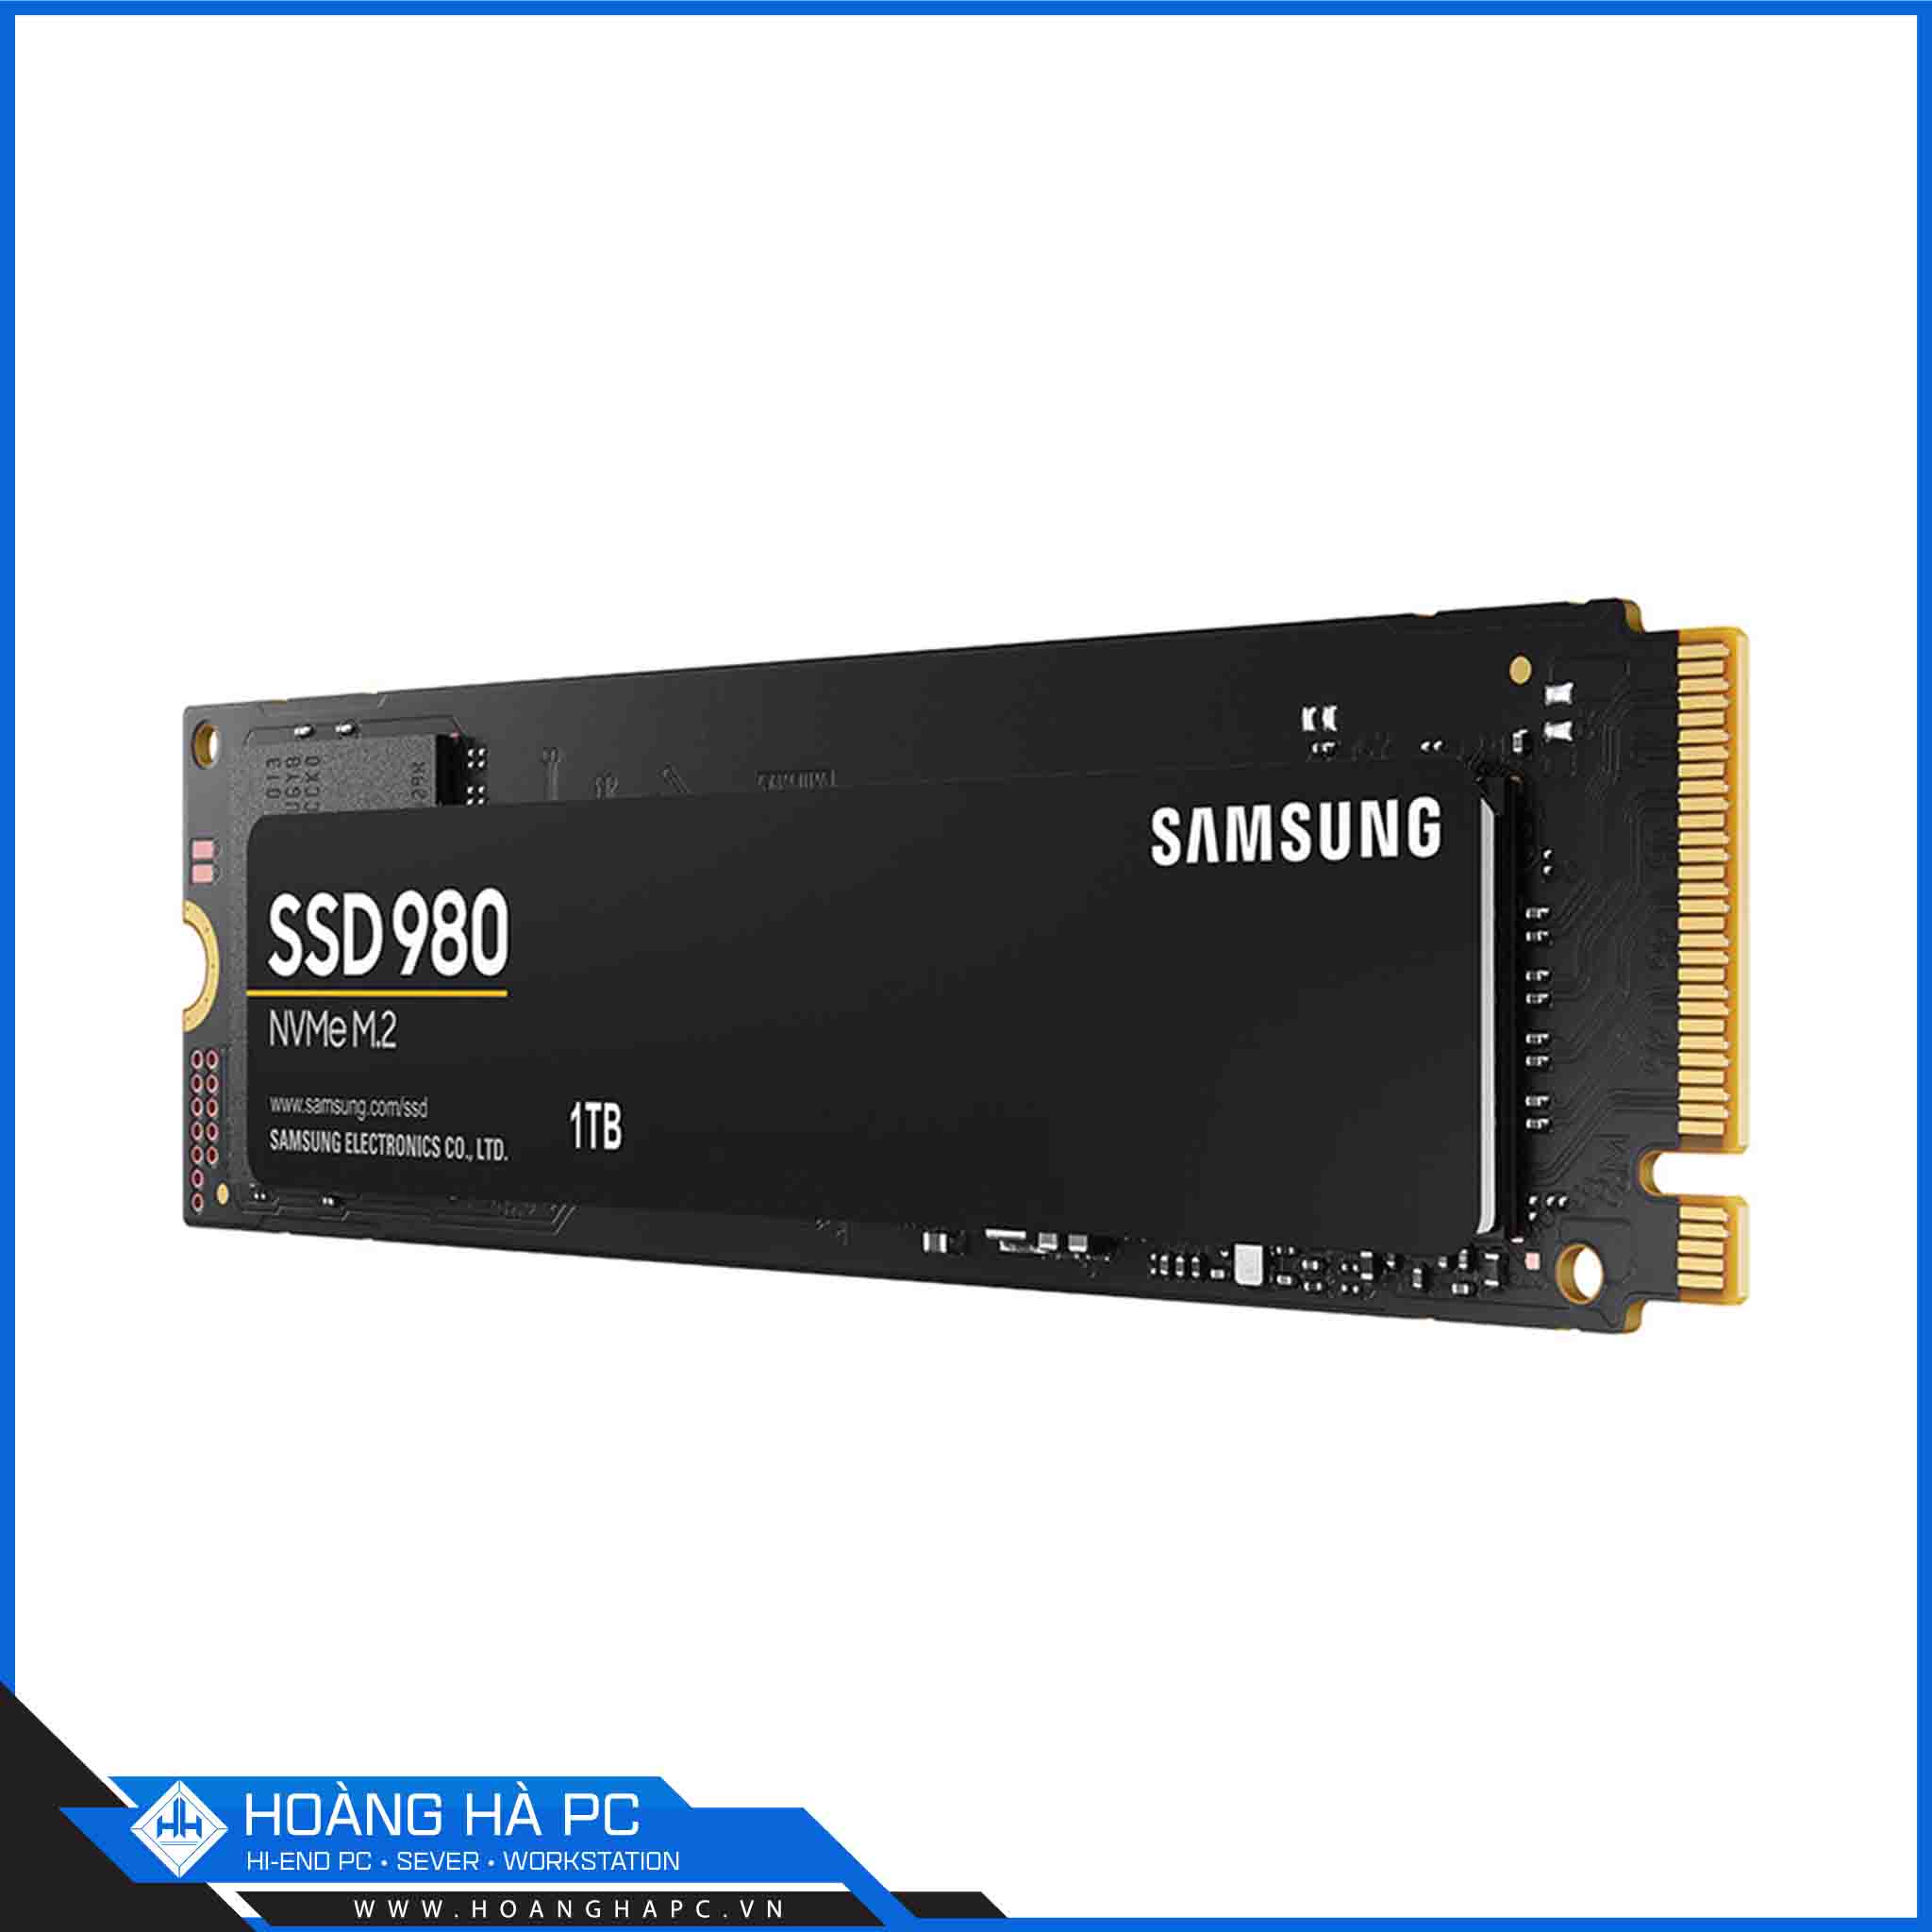 Ổ cứng SSD Samsung 980 1TB PCIe NVMe 3.0x4 (Đọc 3500/s - Ghi 3000MB/s)